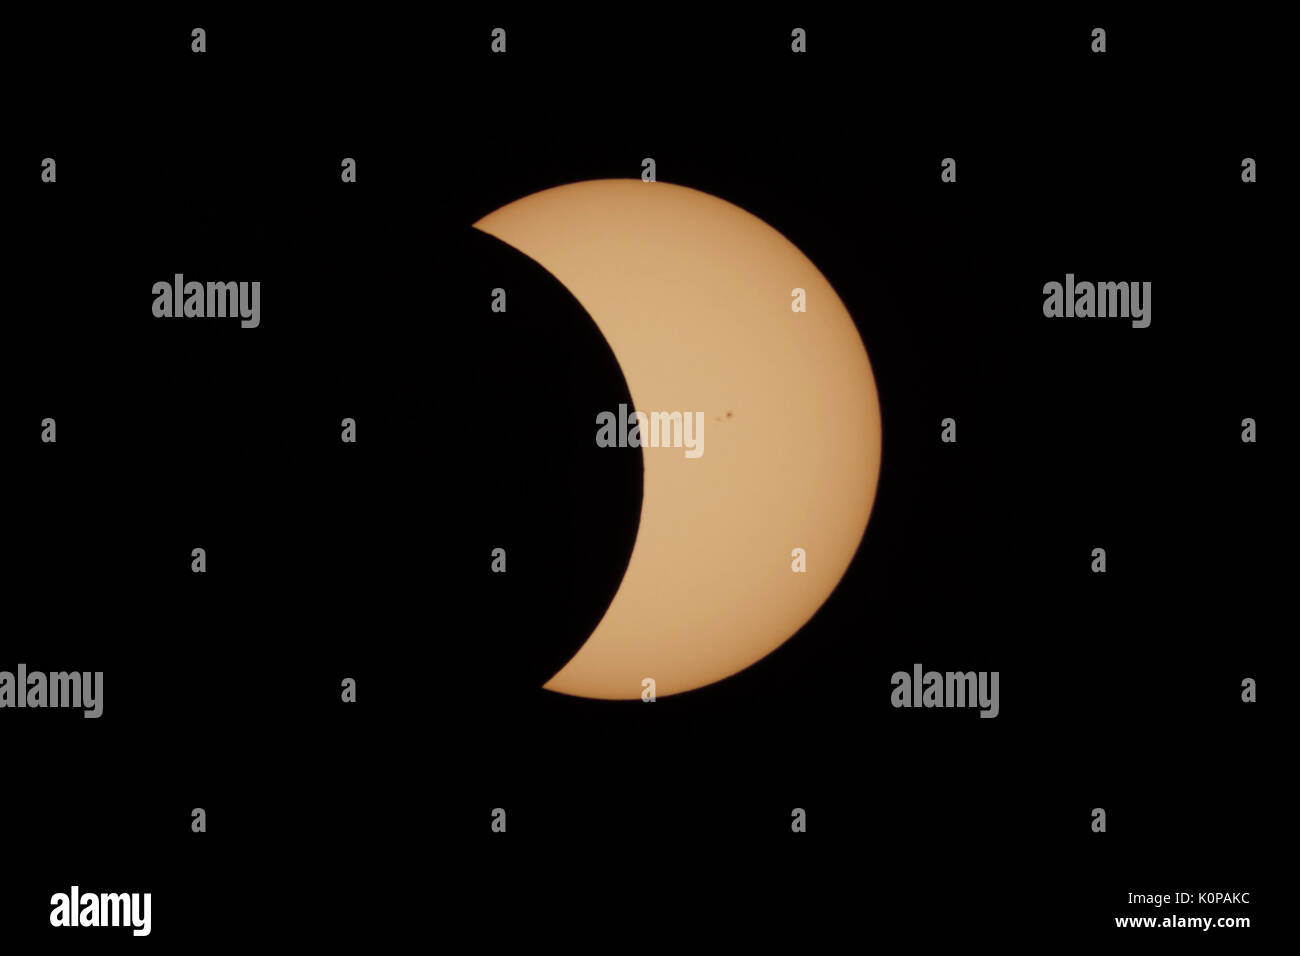 Der Mond geht die Sonne in der zweiten partiellen eclipse Phase der großen amerikanischen Eclipse am 21. August 2017 zu übergeben. Stockfoto